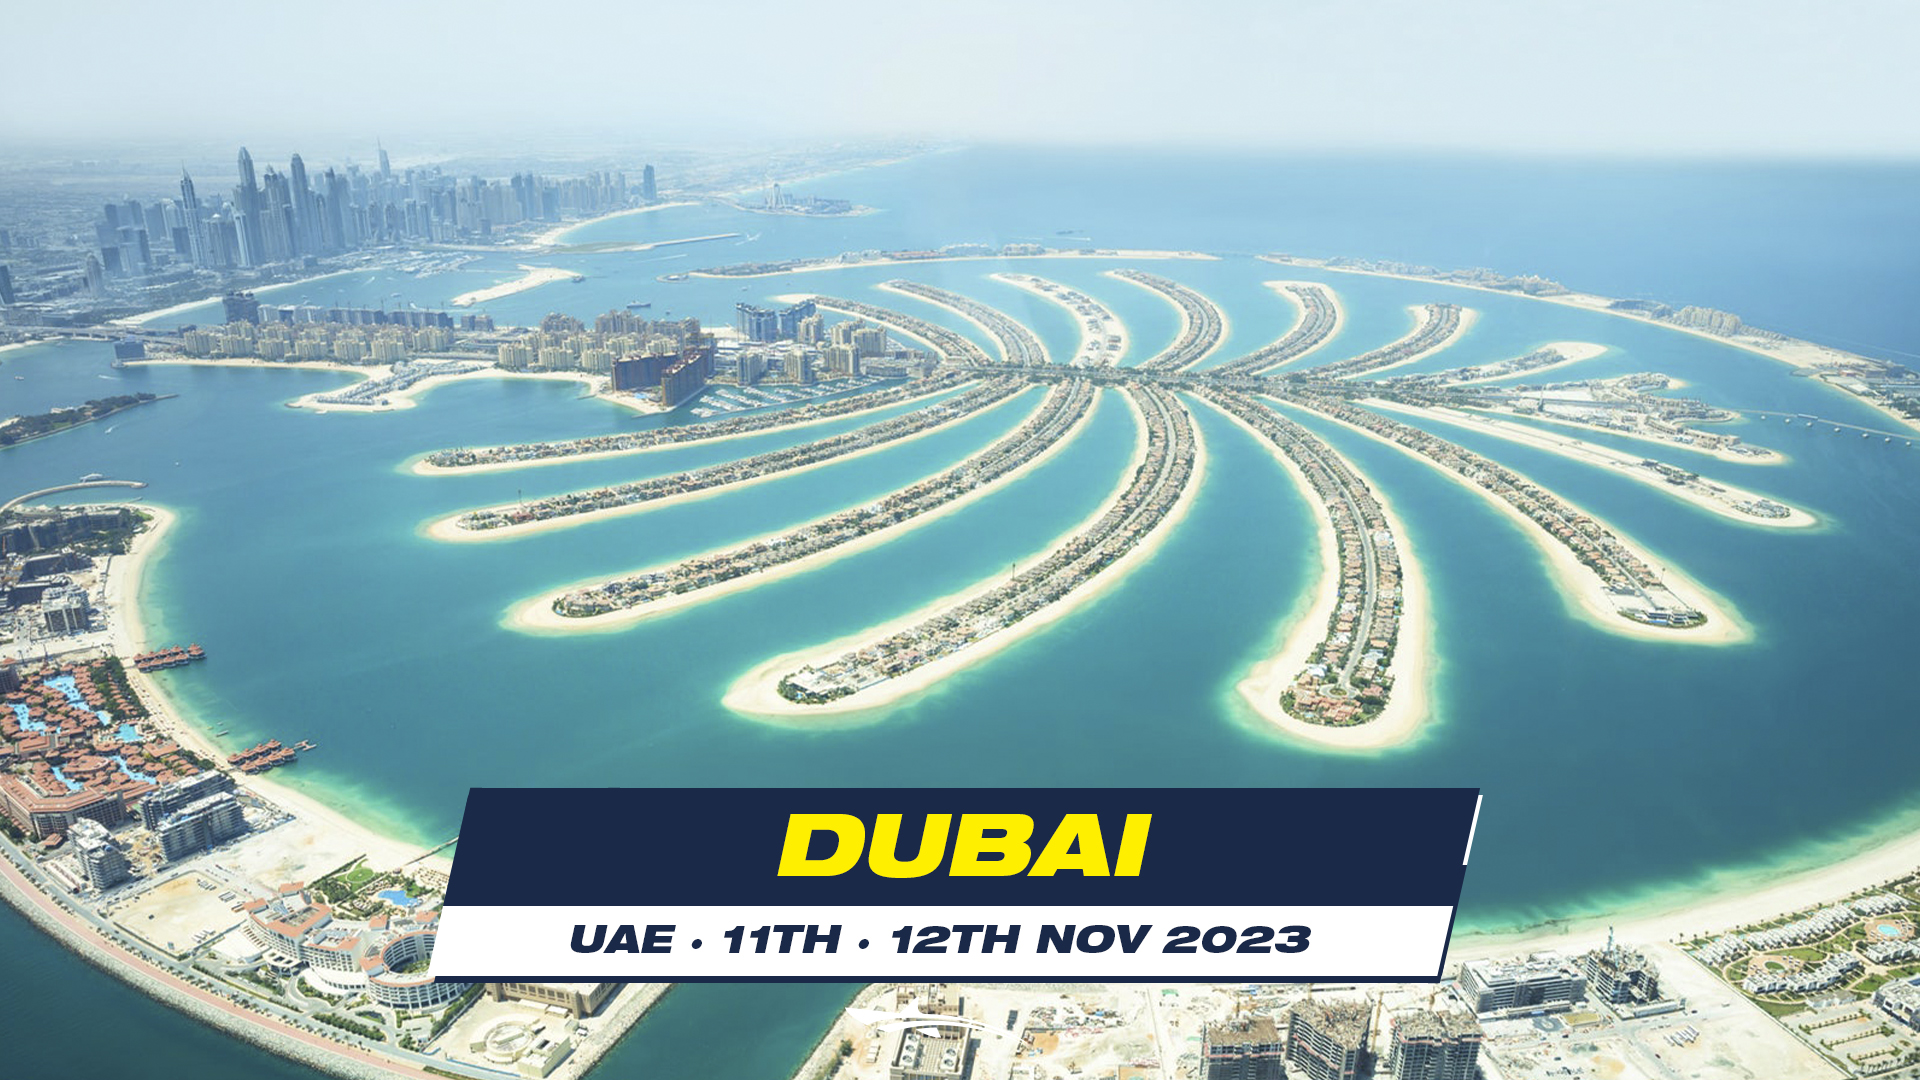 OCEANMAN DUBAI - UAE 2023